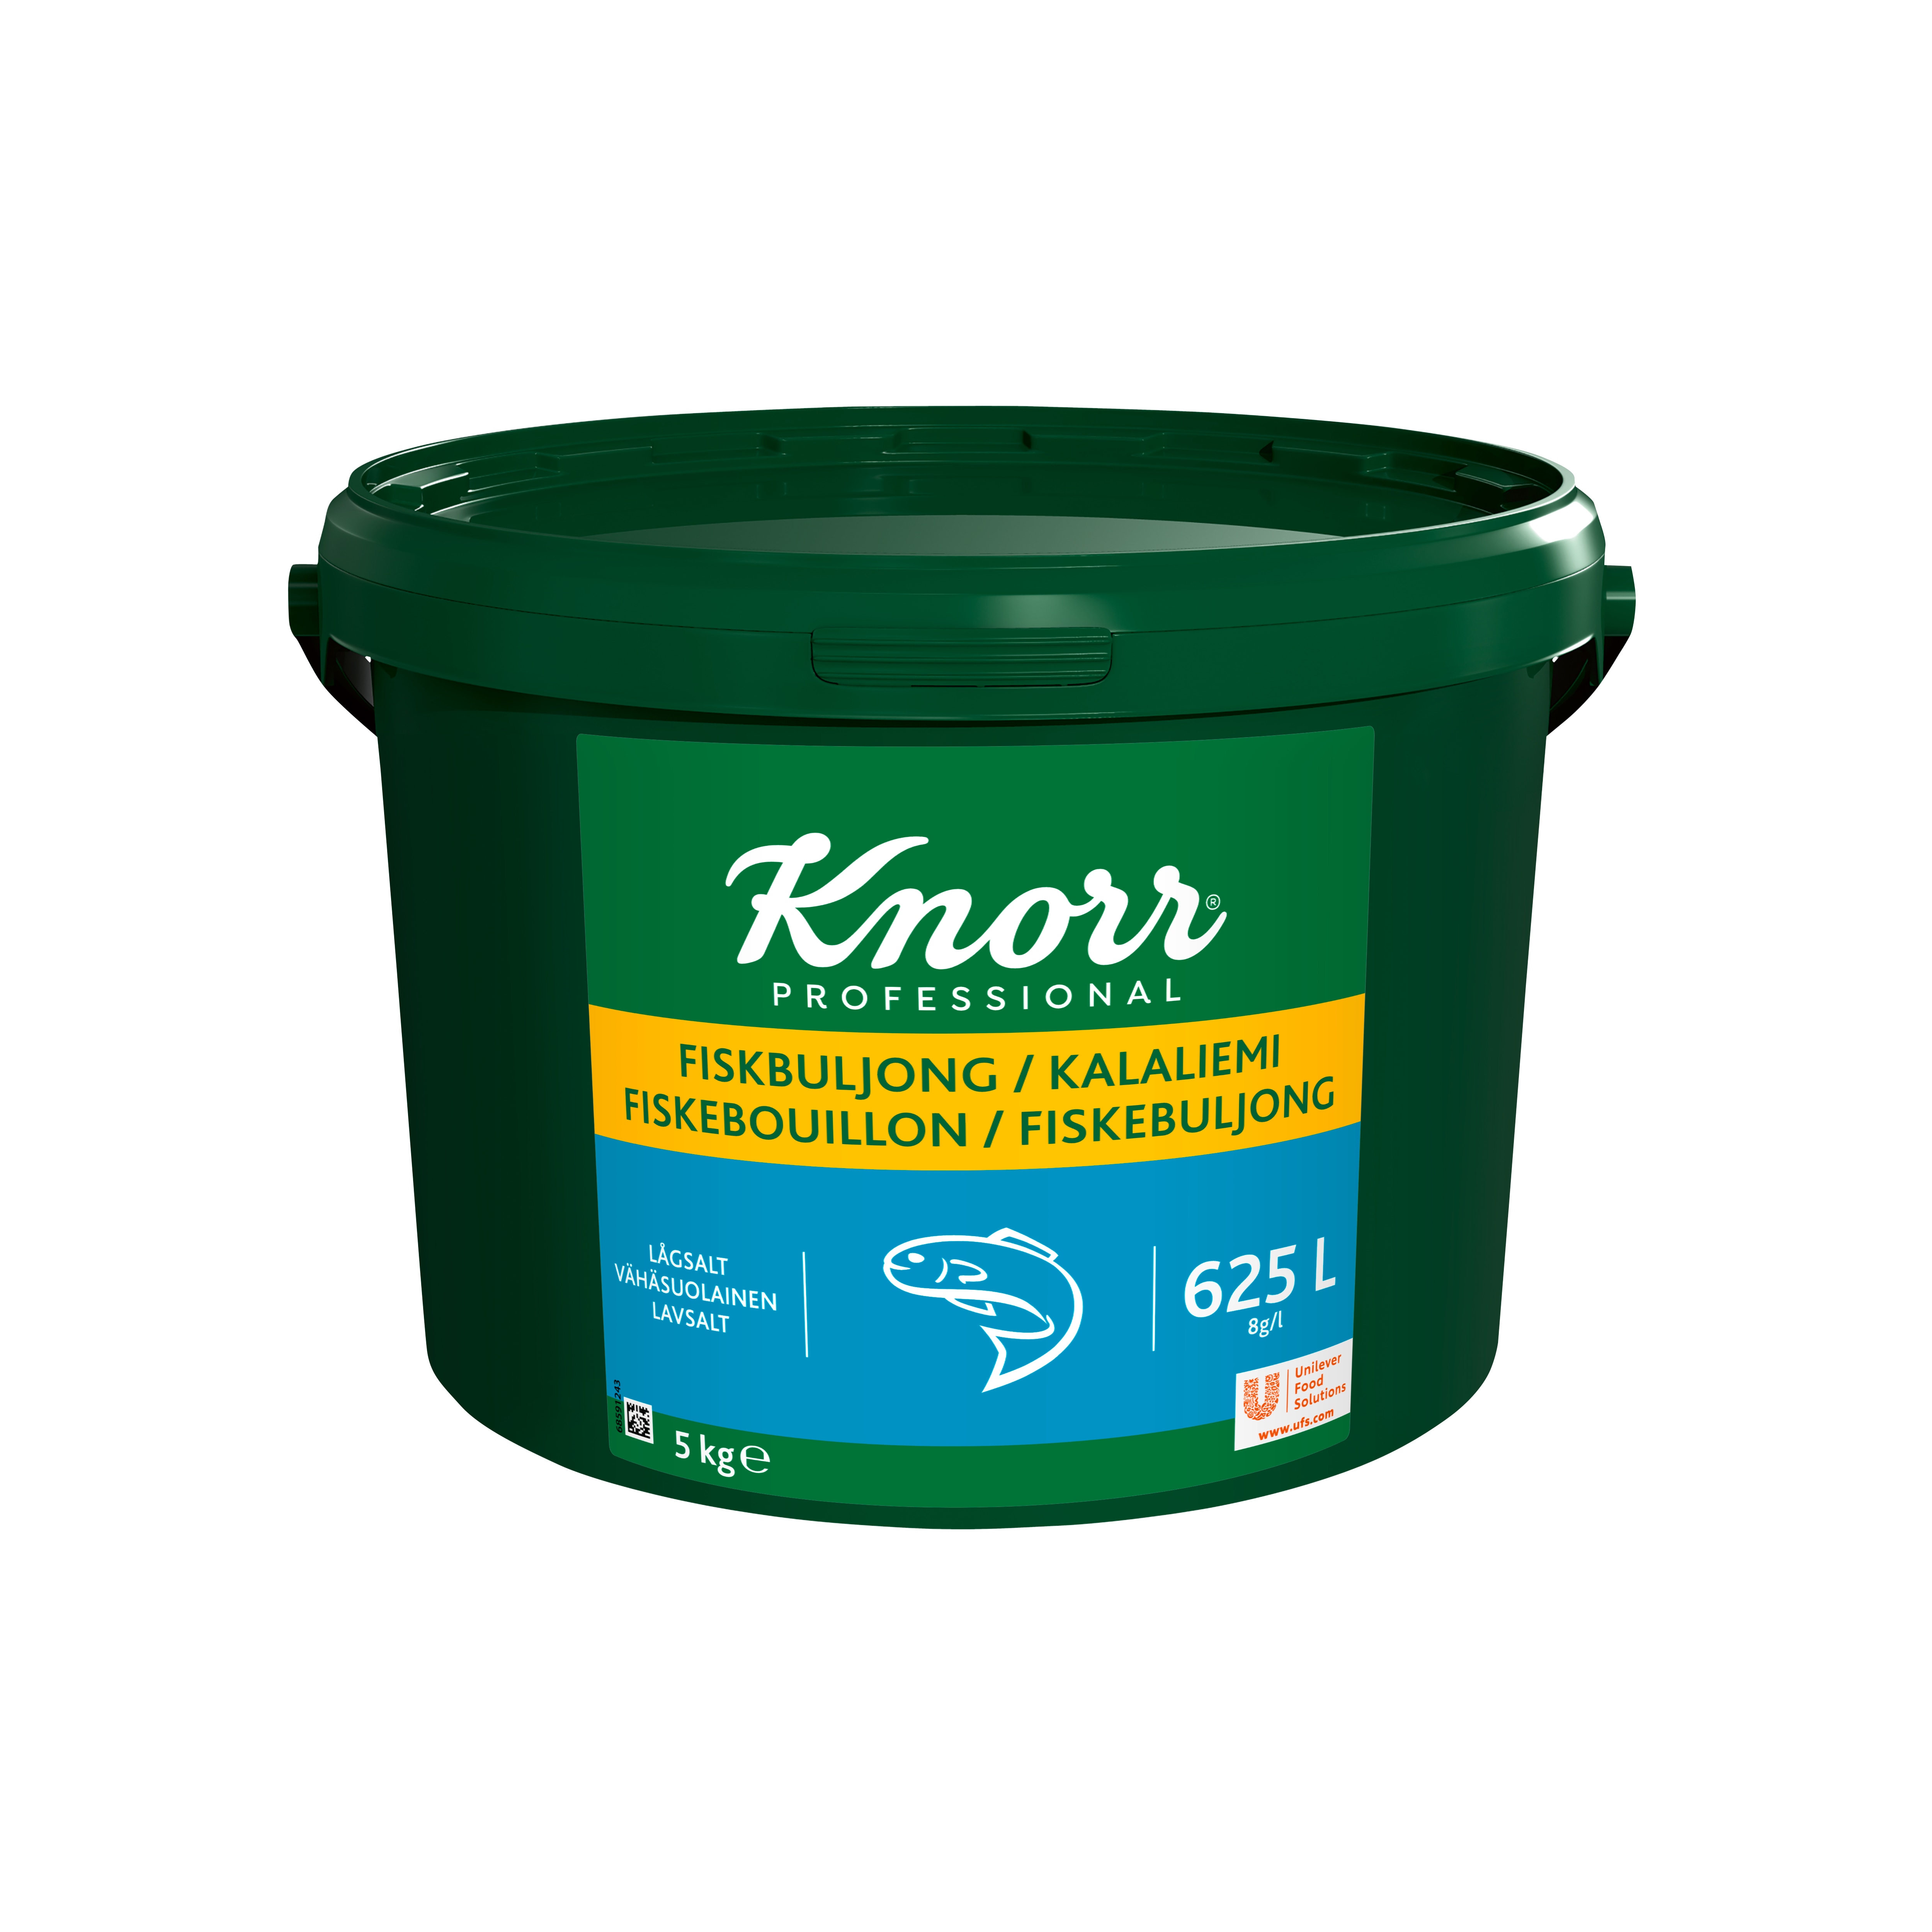 Knorr Fiskbuljong lågsalt 1x5kg - 